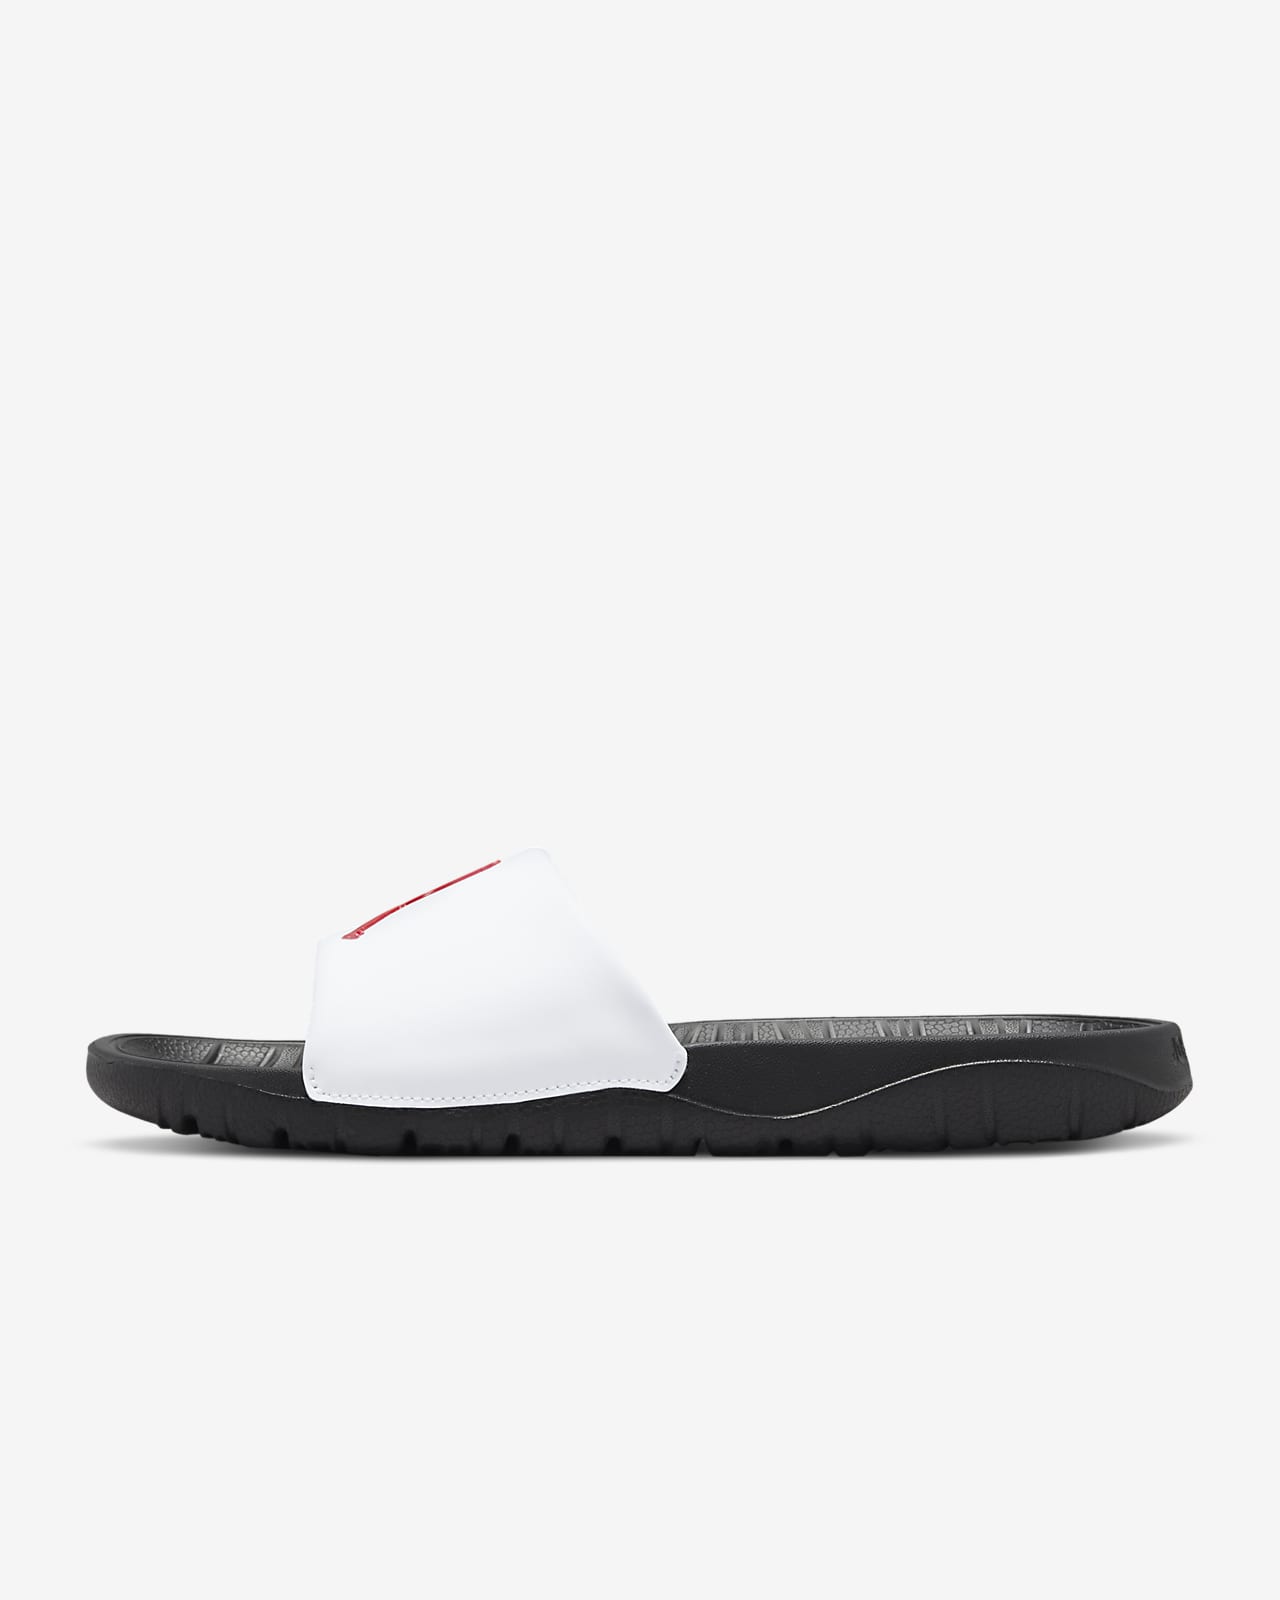 Exemption mound deposit Pantofle Jordan Break. Nike CZ